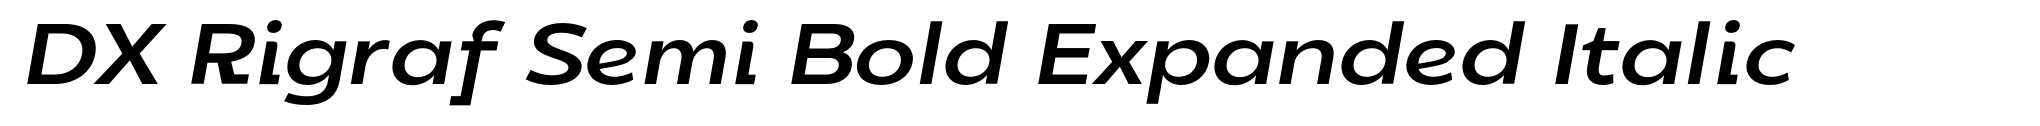 DX Rigraf Semi Bold Expanded Italic image